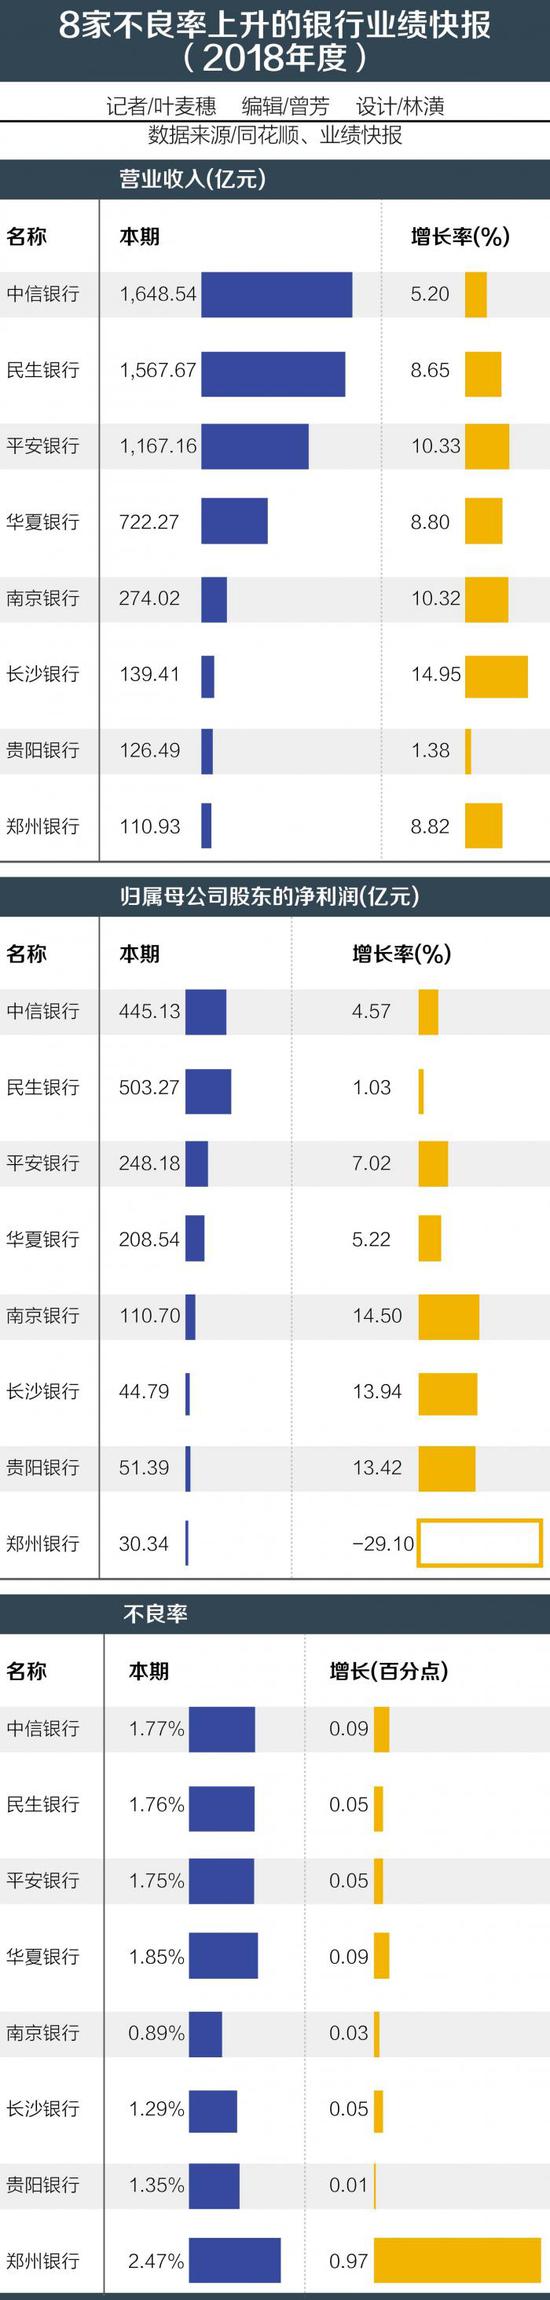 民生中信等8家银行不良率抬升 郑州银行涨幅最大